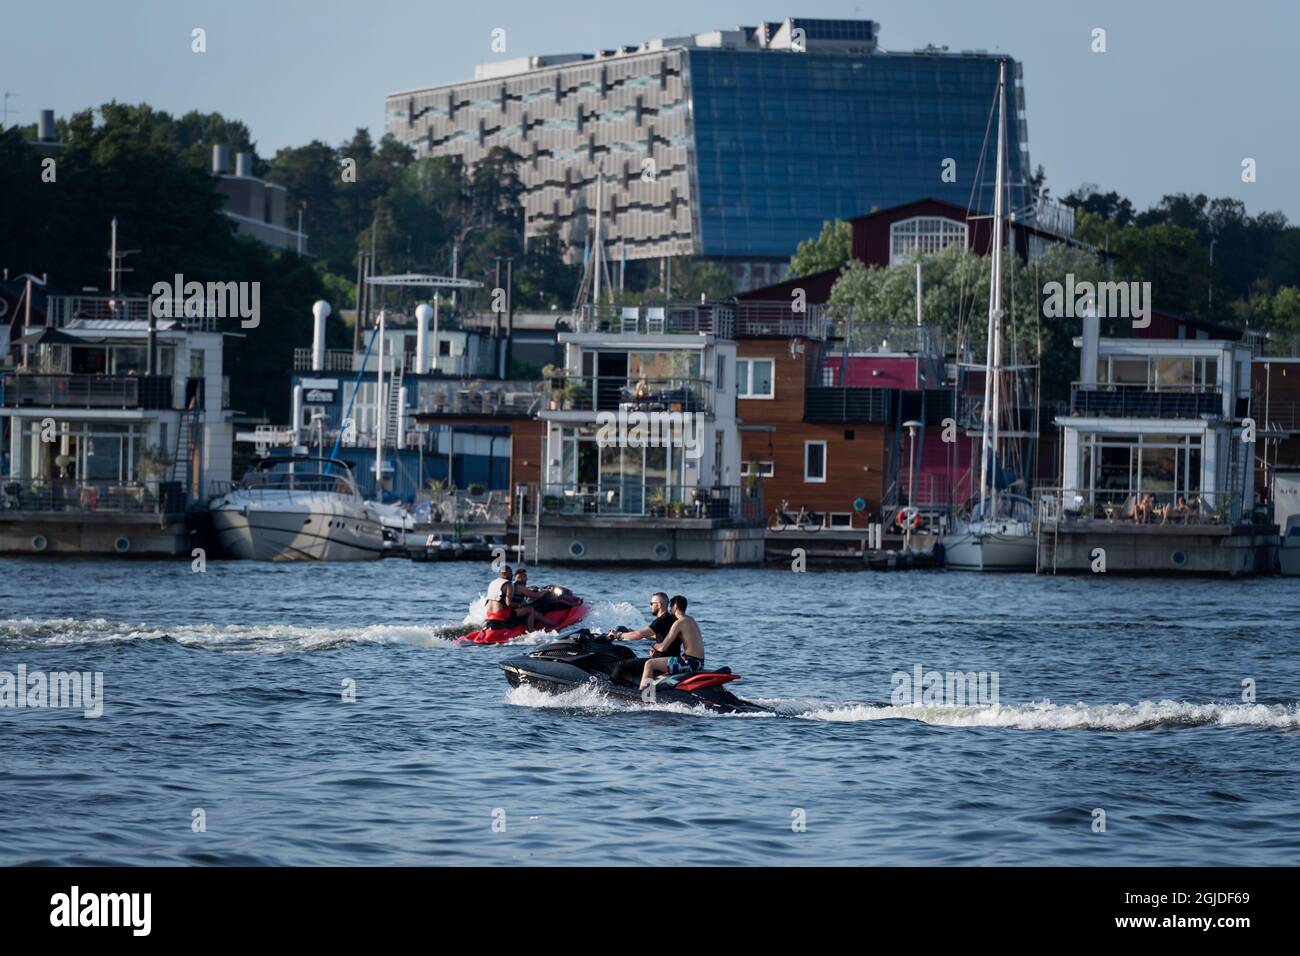 Les gens apprécient la soirée balmy sur la jetée après une journée où les températures ont atteint 30 degrés C, à Stockholm, Suède, le 24 juin 2020. Photo: Stina Stjernkvist / TT code 11610 Banque D'Images